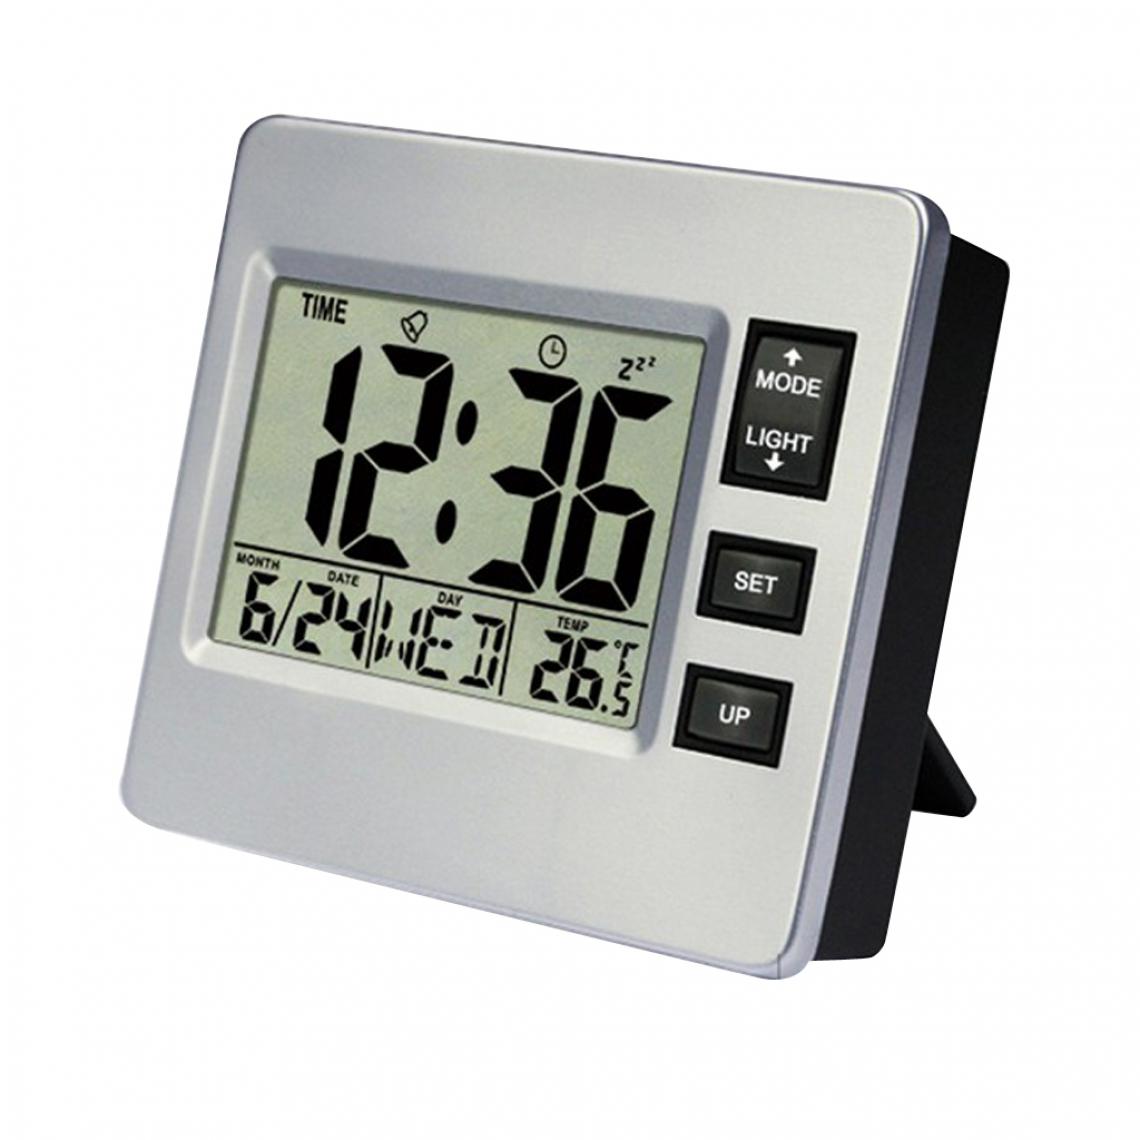 marque generique - Horloge LCD avec Veilleuse, Affichage de La Température / Du Calendrier / Fonction de Répétition, Fonctionne à Piles Uniquement - Réveil